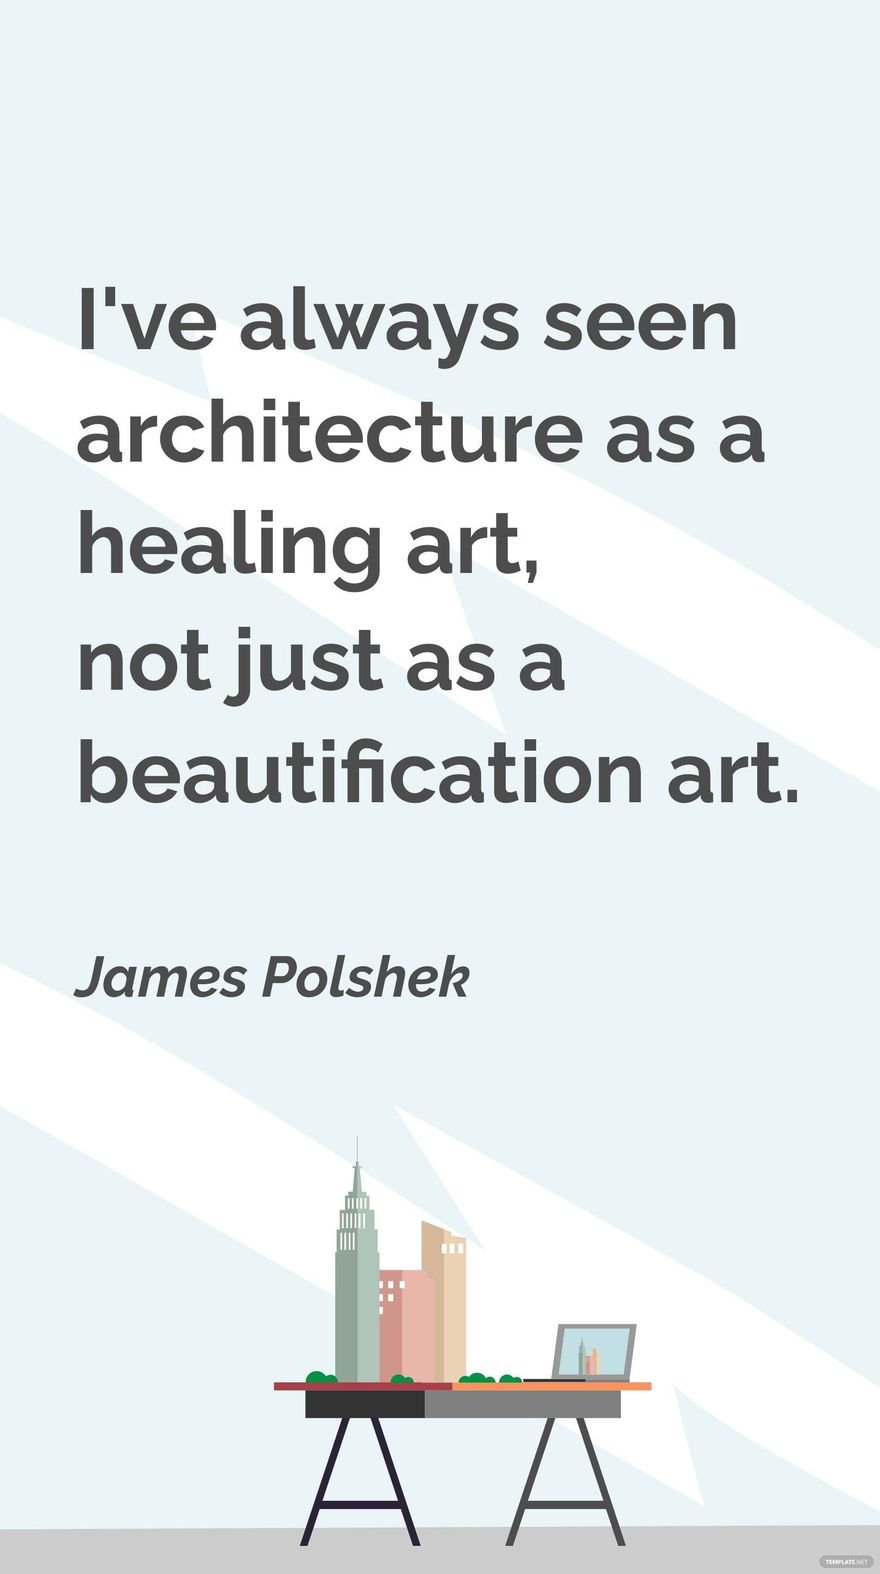 James Polshek - I've always seen architecture as a healing art, not just as a beautification art.